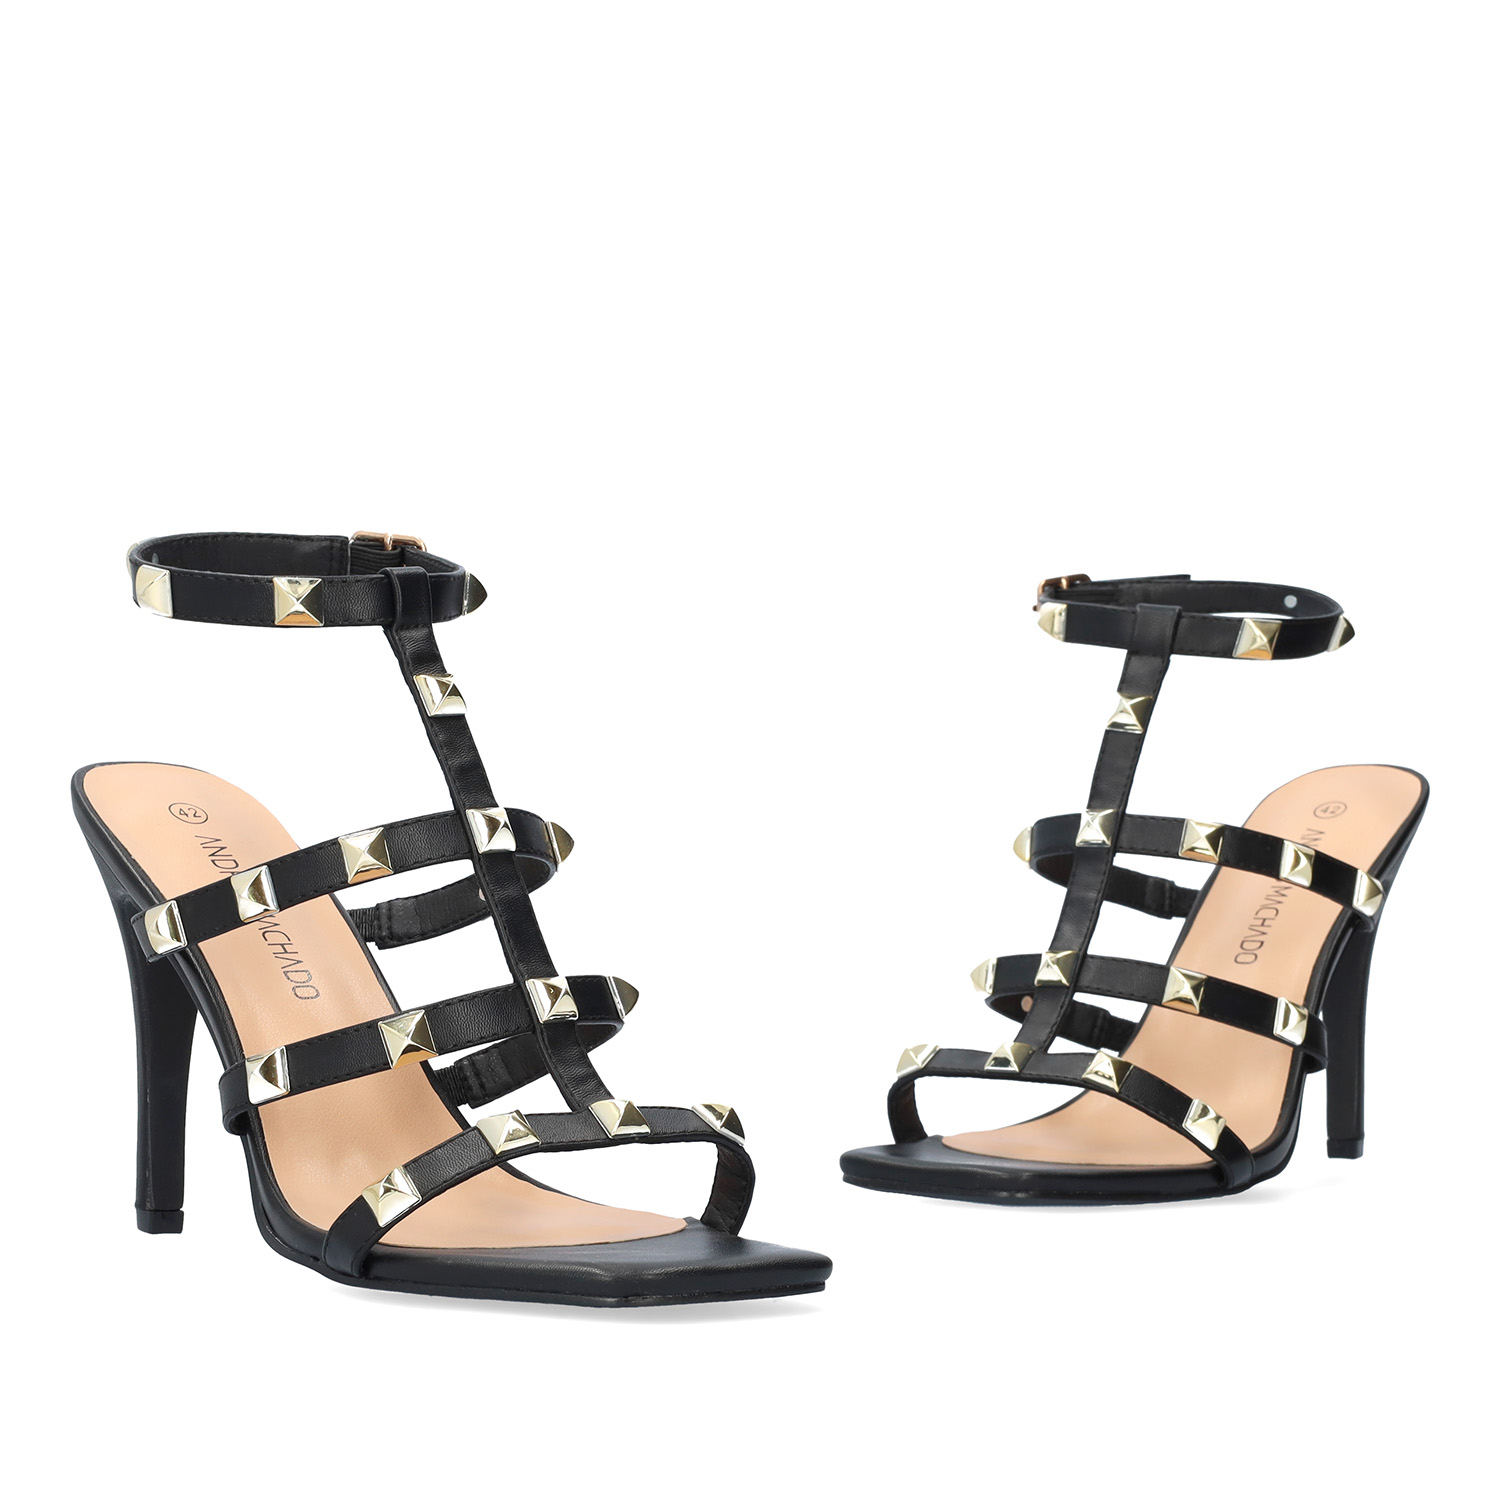 Soft black coloured hig heels sandals 